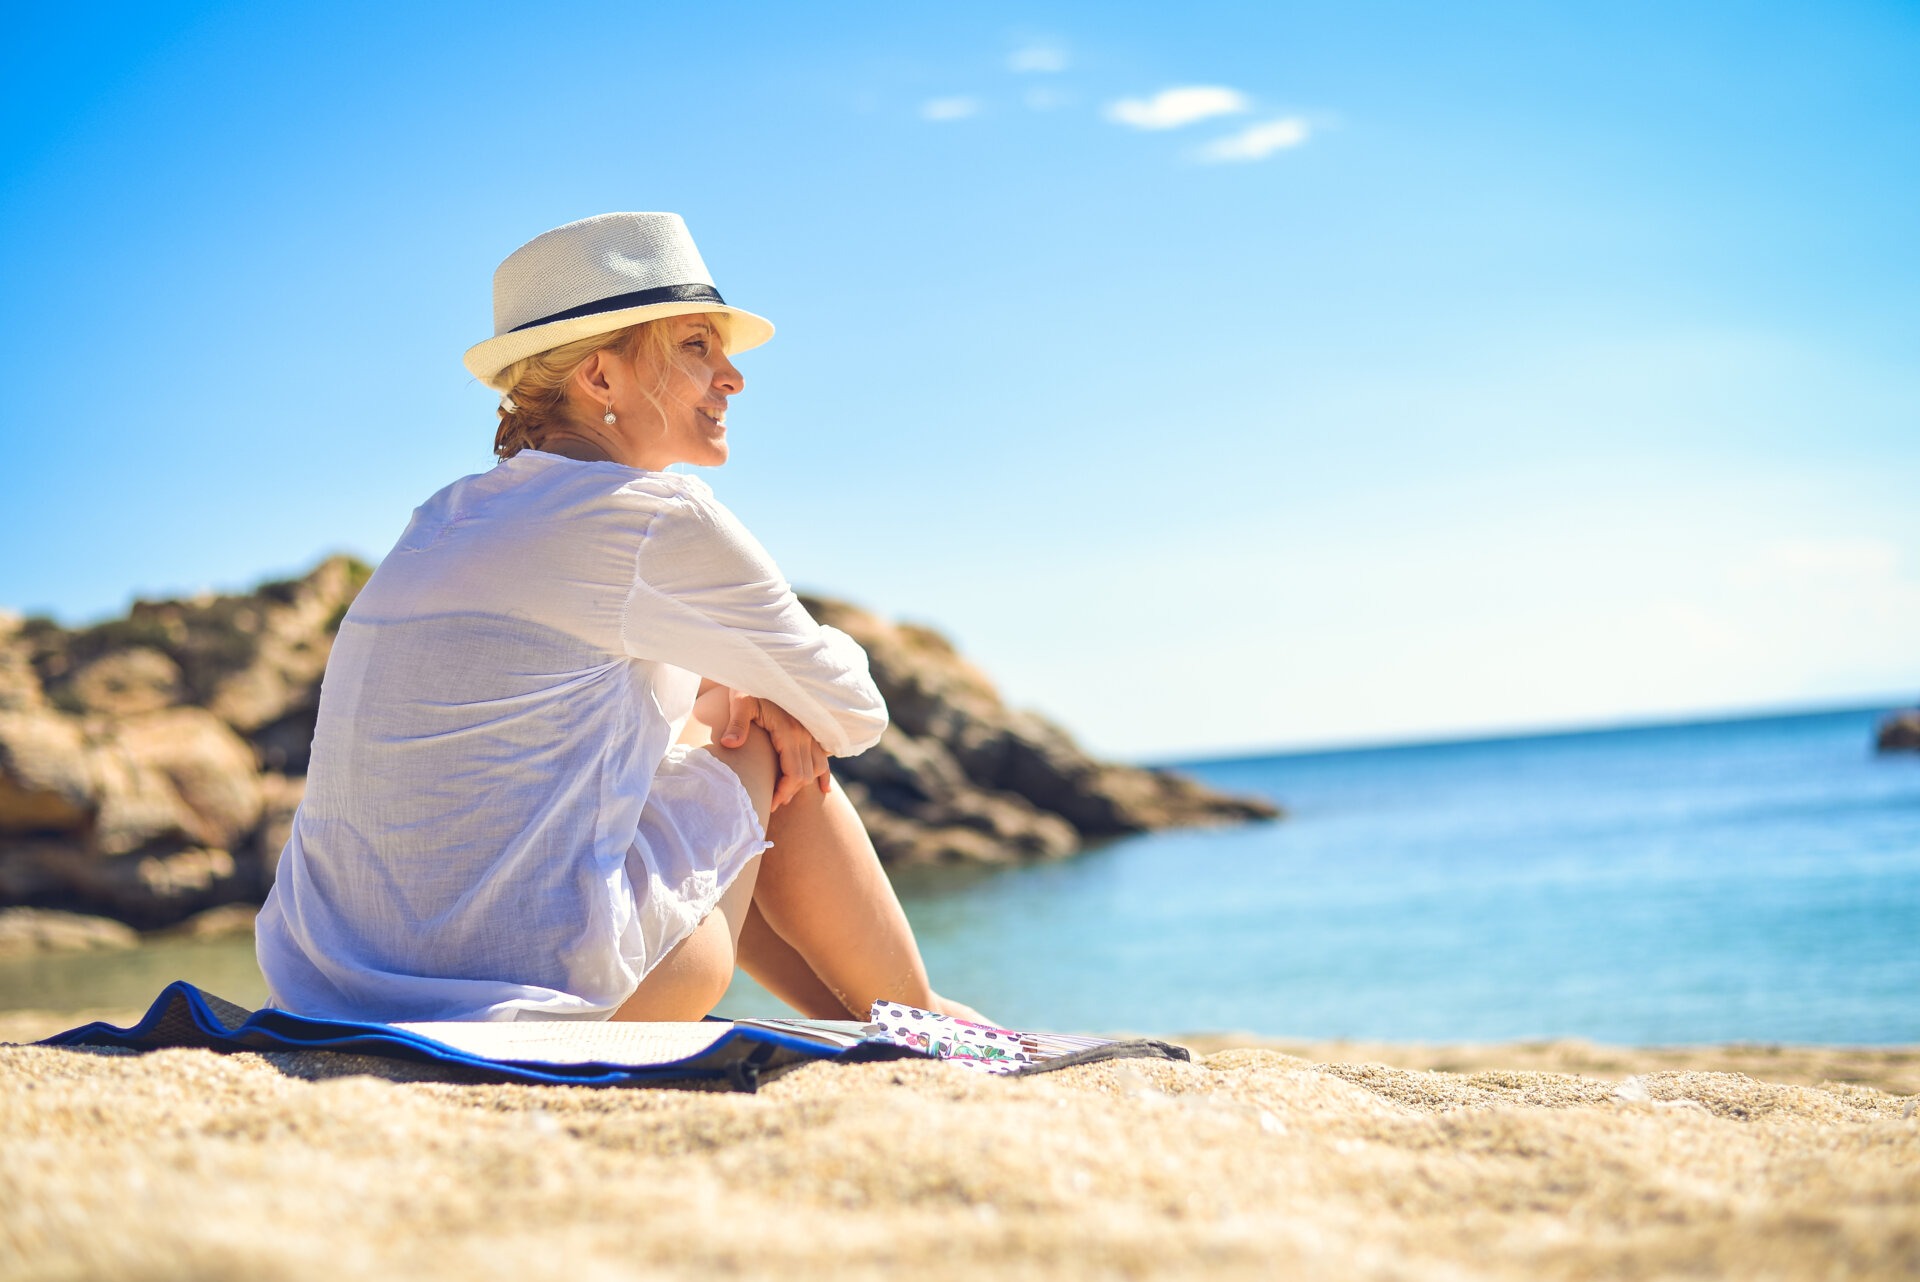 Μια γυναίκα, σε μια παραλία, που φοράει ένα καπέλο, ένα λινό πουκάμισο και το μαγιό της, και κάθεται στην άμμο, πάνω σε μια πετσέτα.